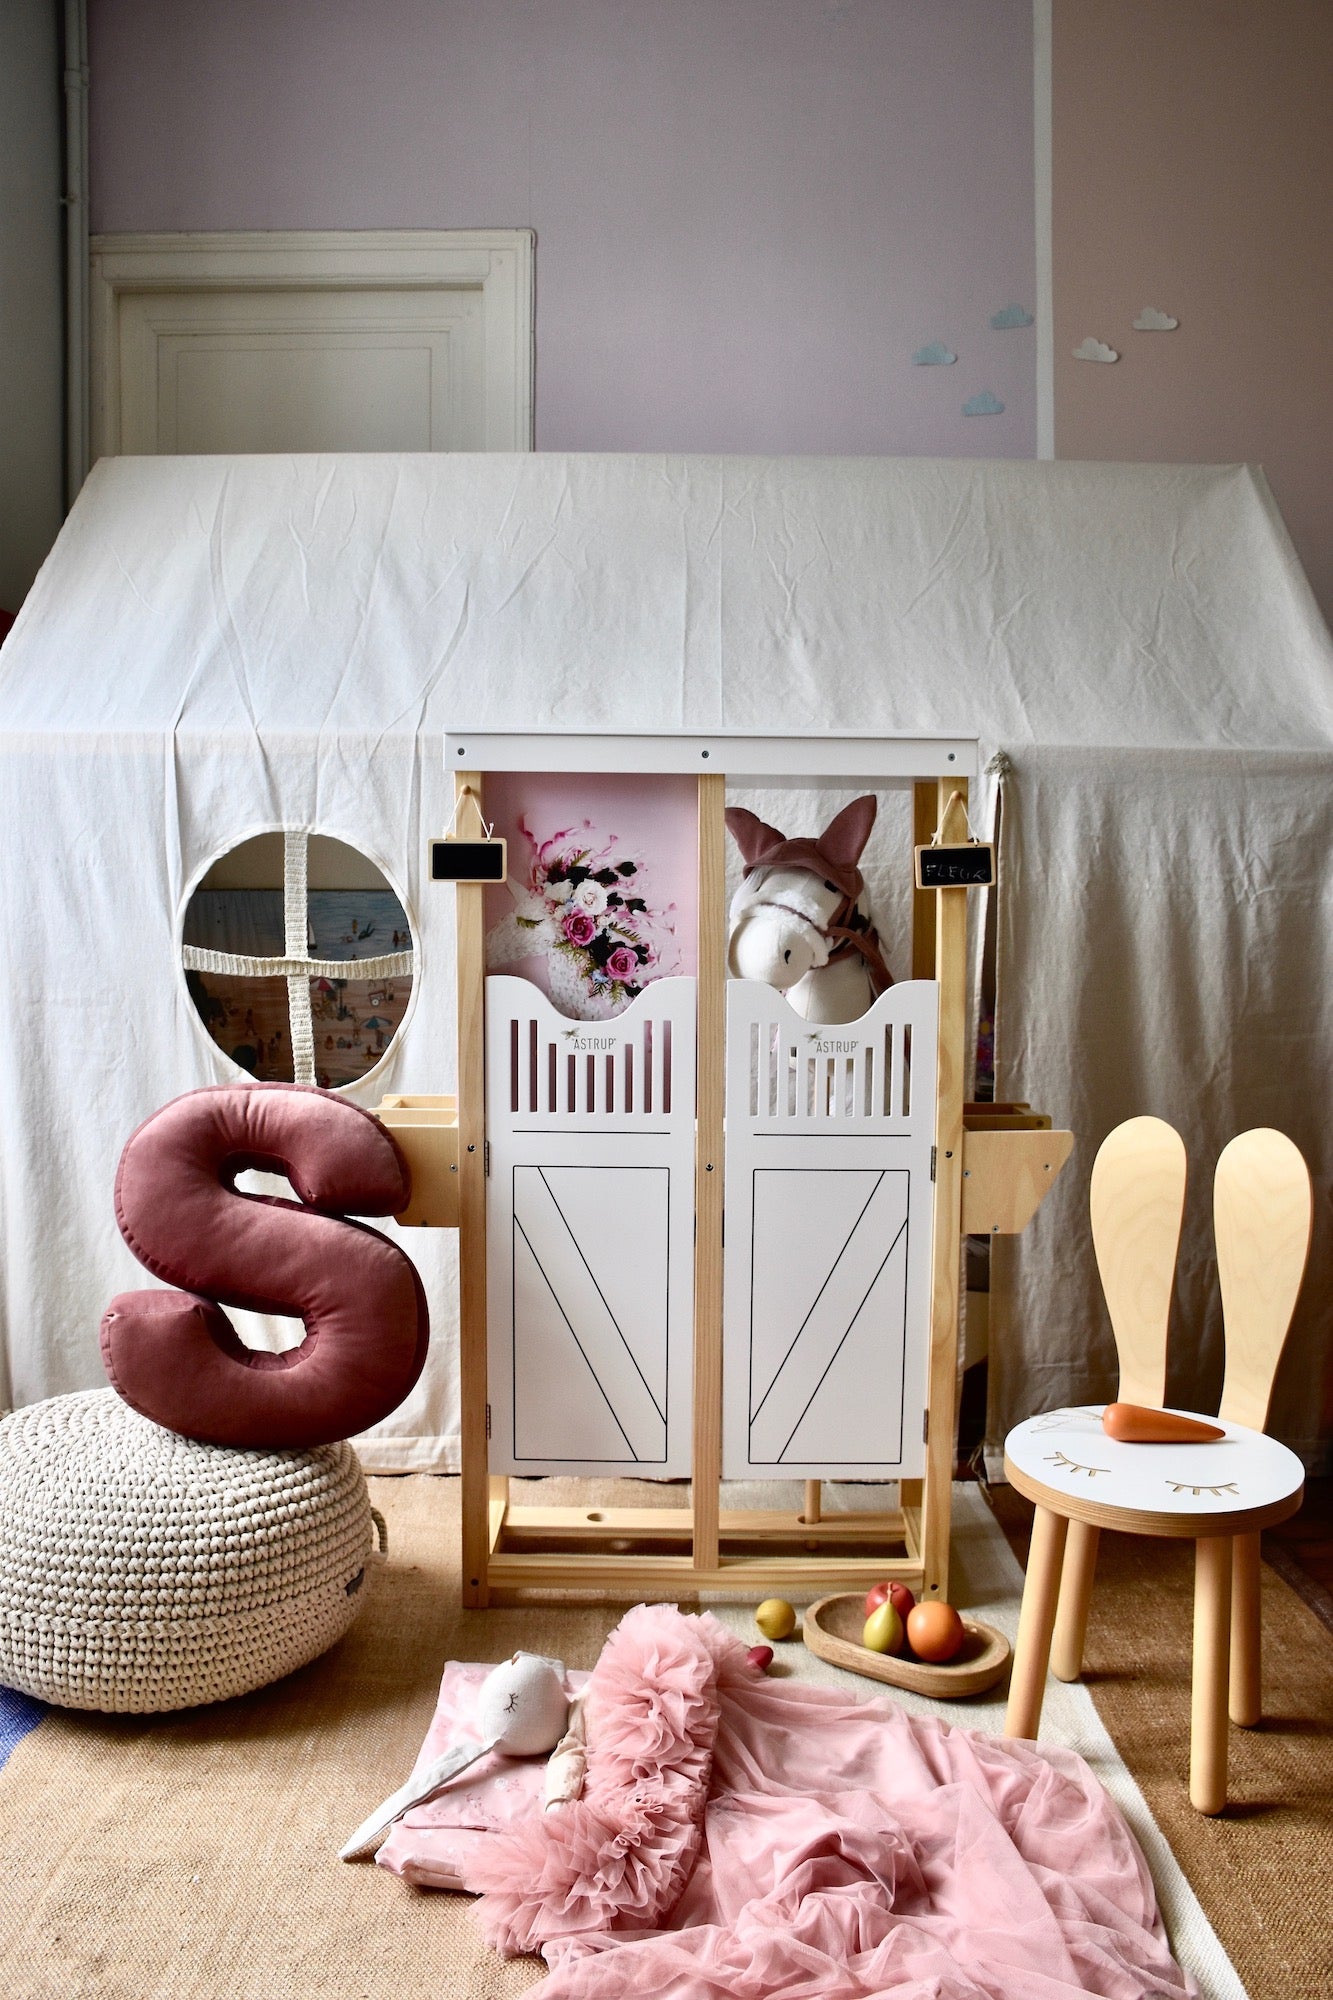 pokoik dziewczynki z namiotem i poduszką literką welurową S w kolorze różowym od Bettys Home